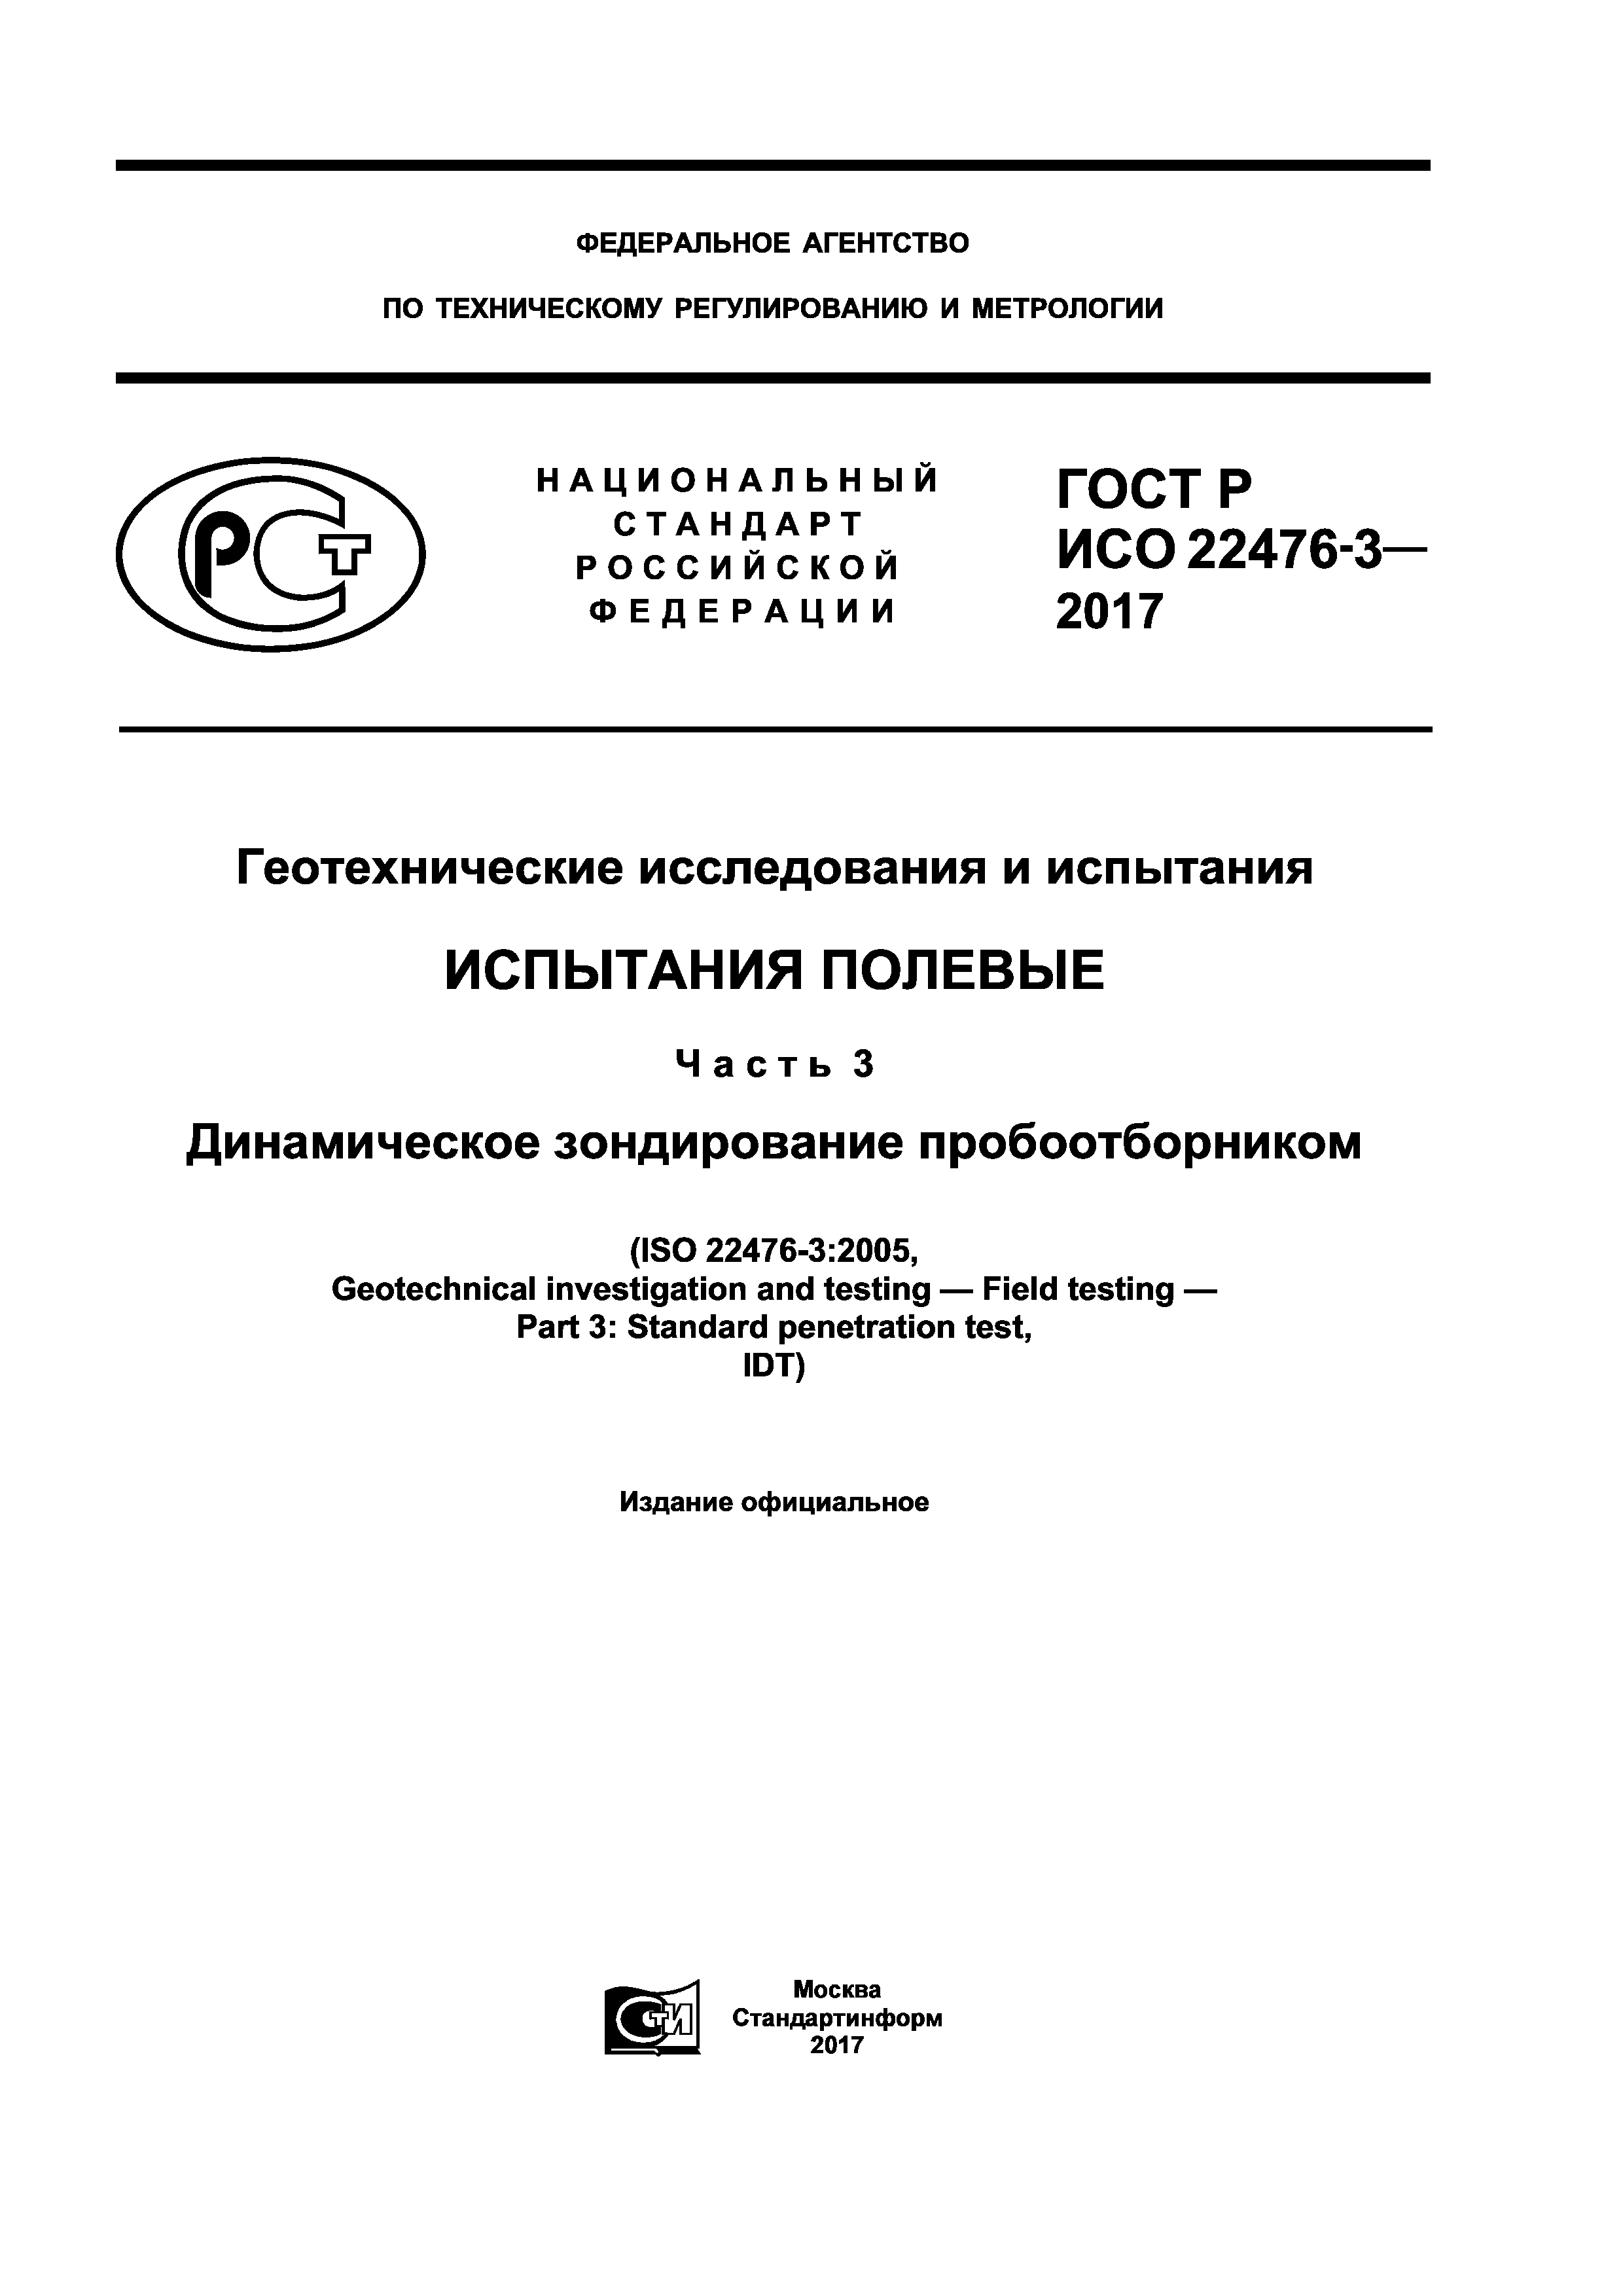 ГОСТ Р ИСО 22476-3-2017